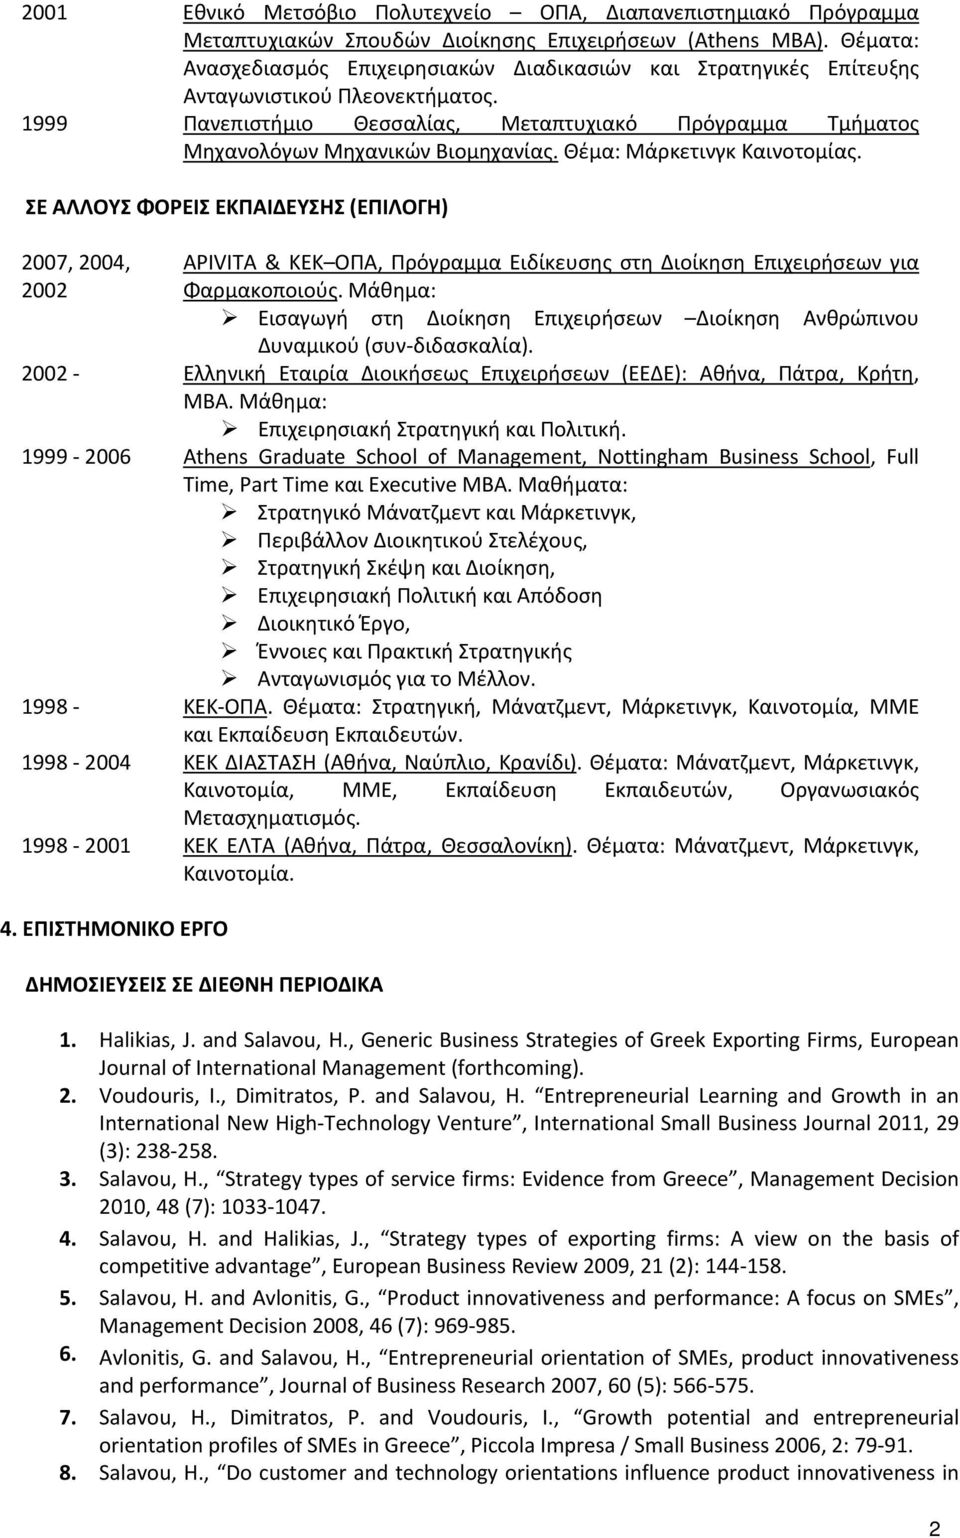 1999 Πανεπιστήμιο Θεσσαλίας, Μεταπτυχιακό Πρόγραμμα Τμήματος Μηχανολόγων Μηχανικών Βιομηχανίας. Θέμα: Μάρκετινγκ Καινοτομίας.